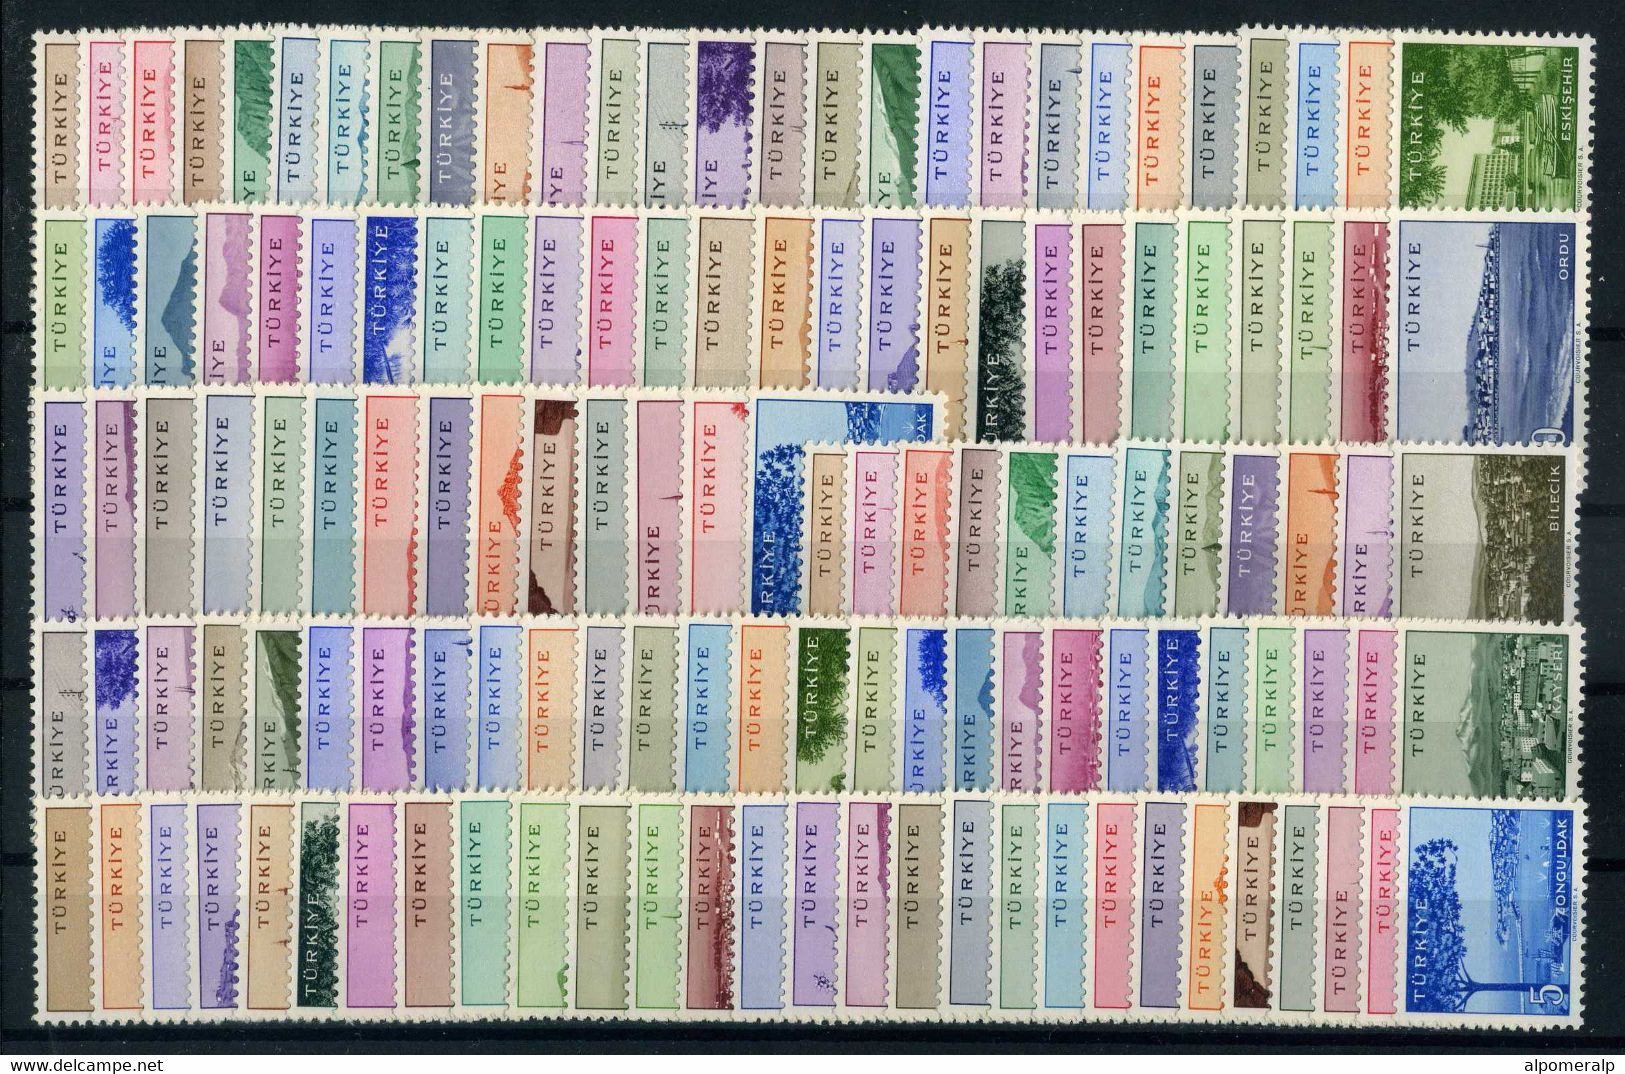 Türkiye 1958-1960 MNH 134 Stamps Cities I-II-III-IV-V-VI-VII Complete Set - Unused Stamps